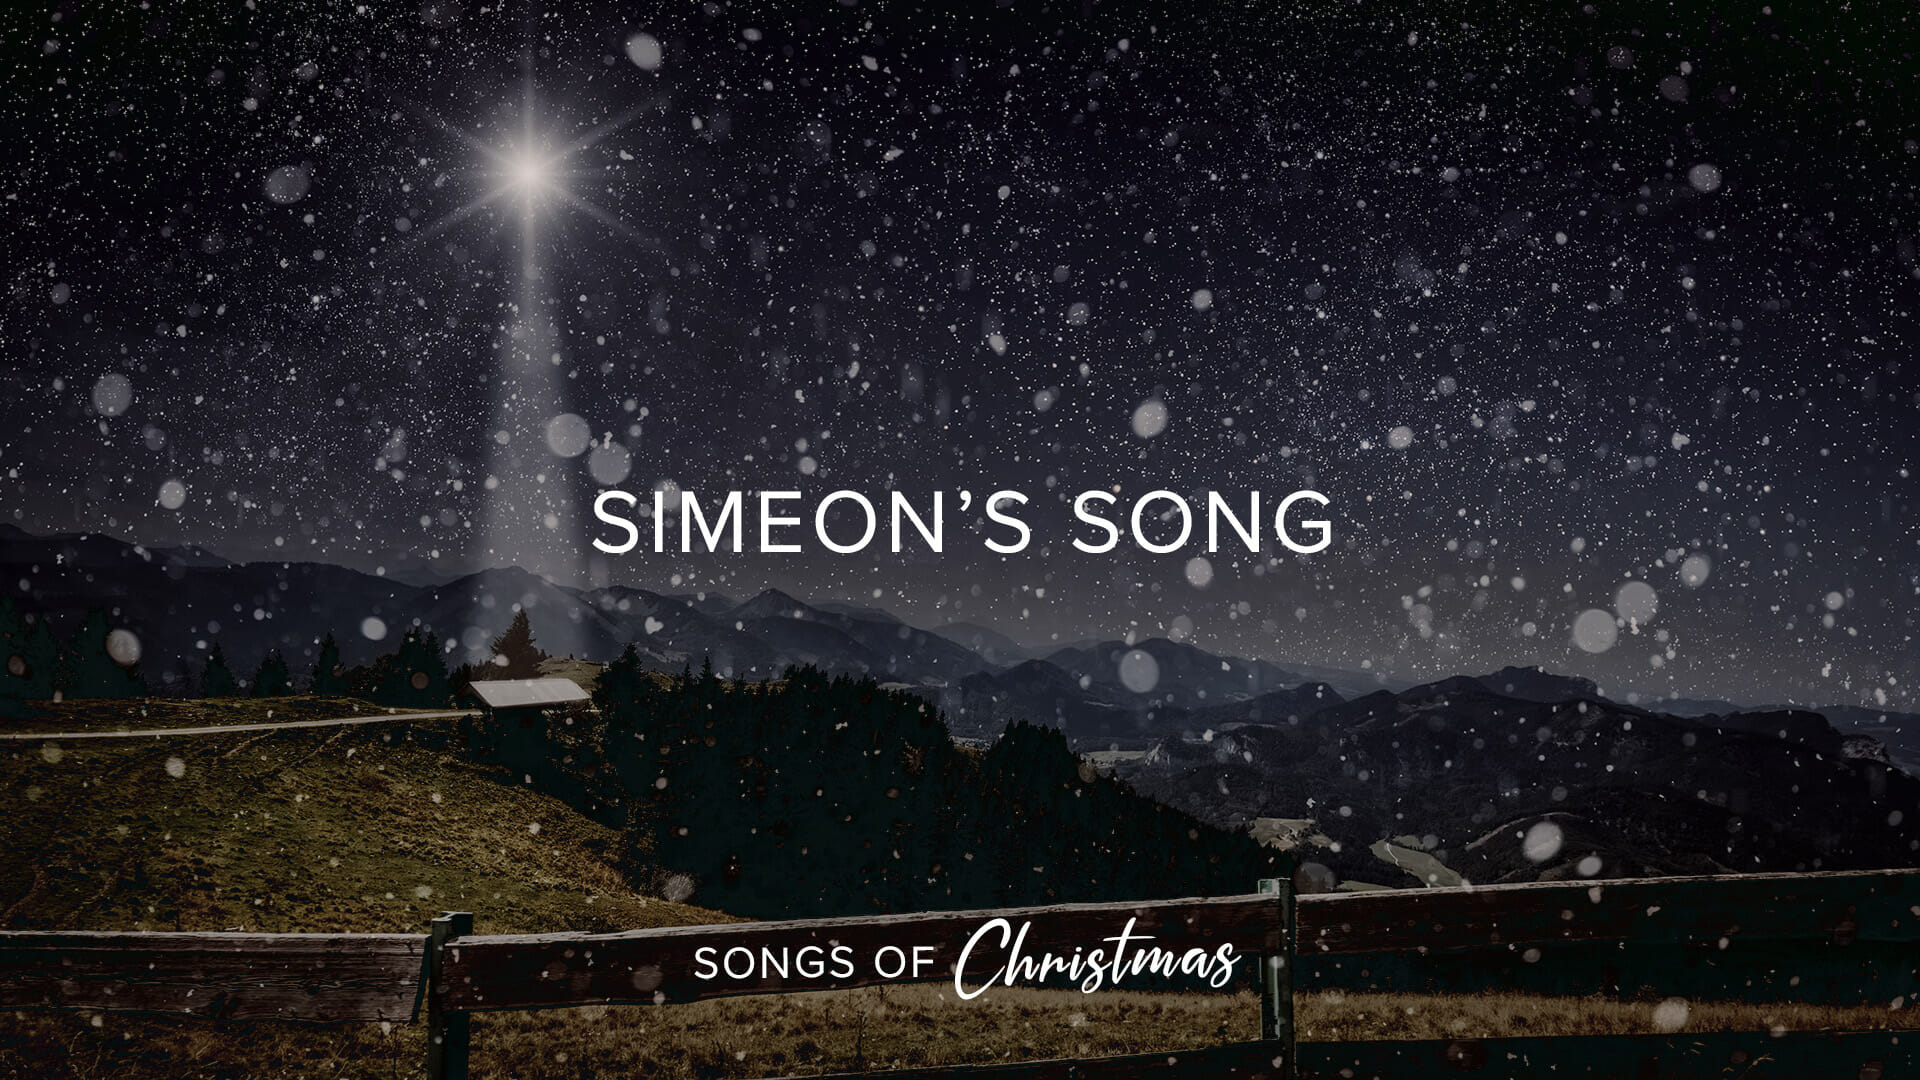 Simeon’s song: Praise, Promise, Light